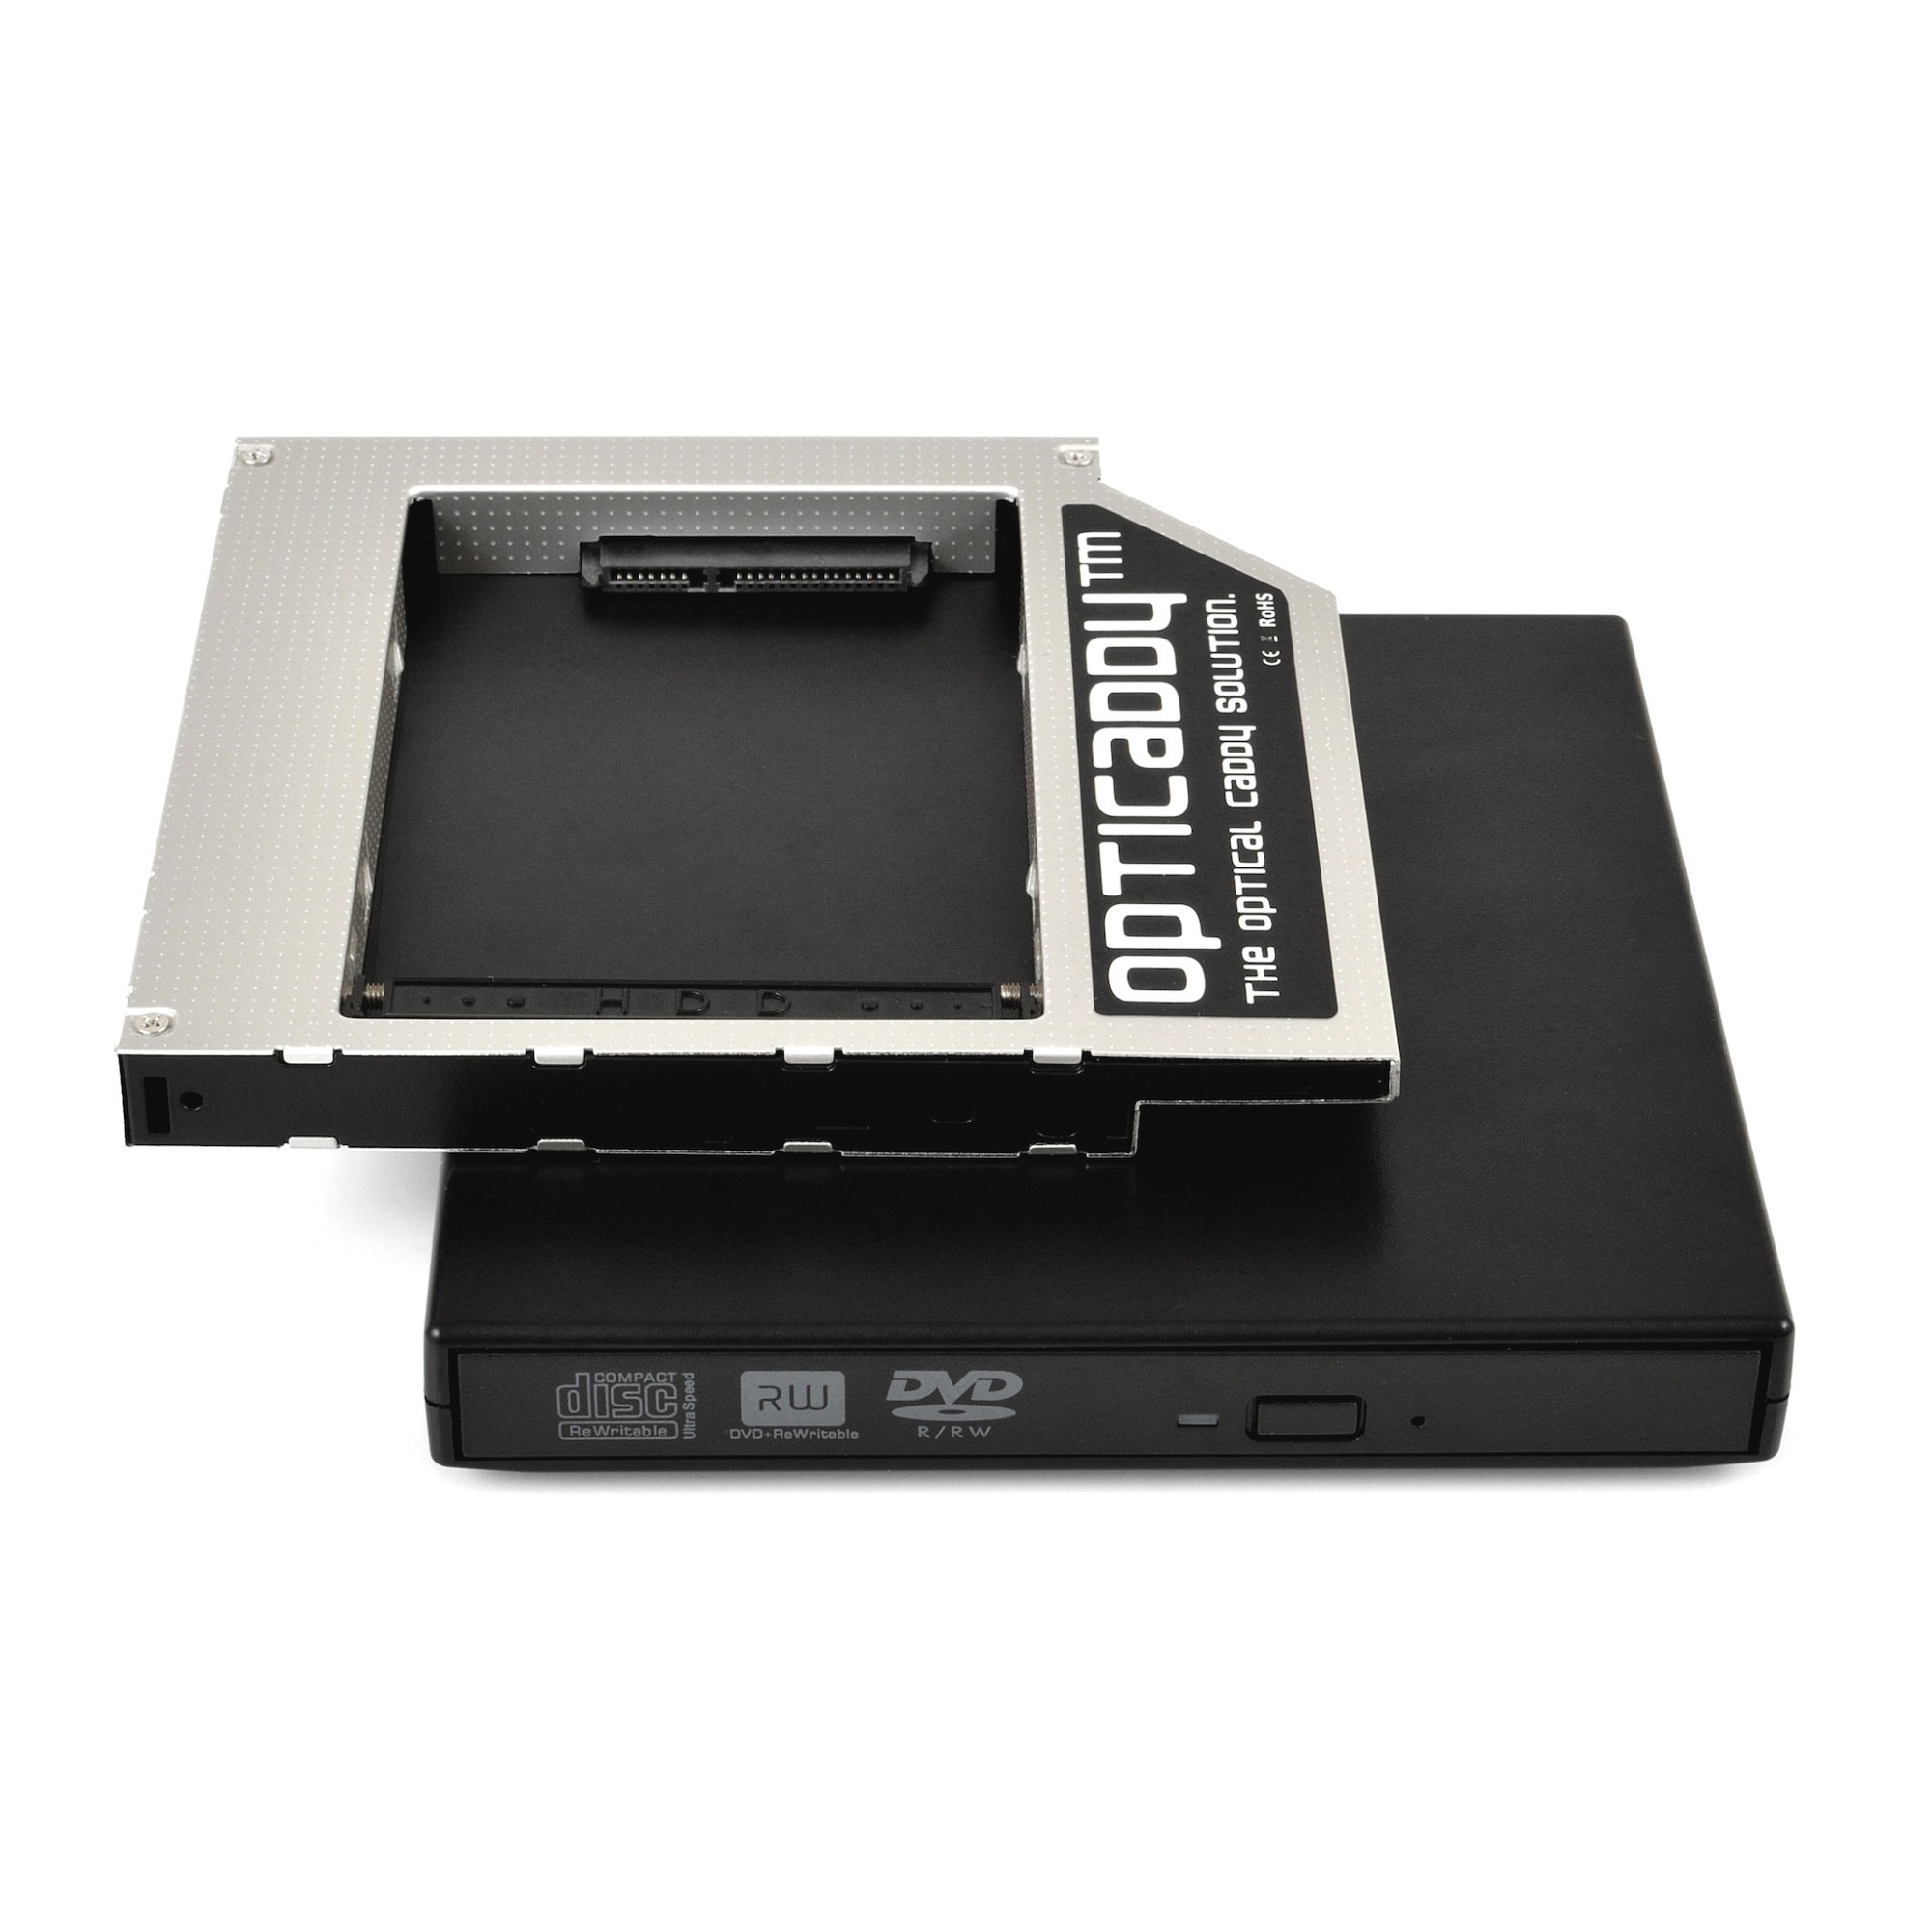 Adaptor unitate optica Asus N73SV HDD/SSD caddy Opticaddy + carcasa DVD USB externa eMAG.ro